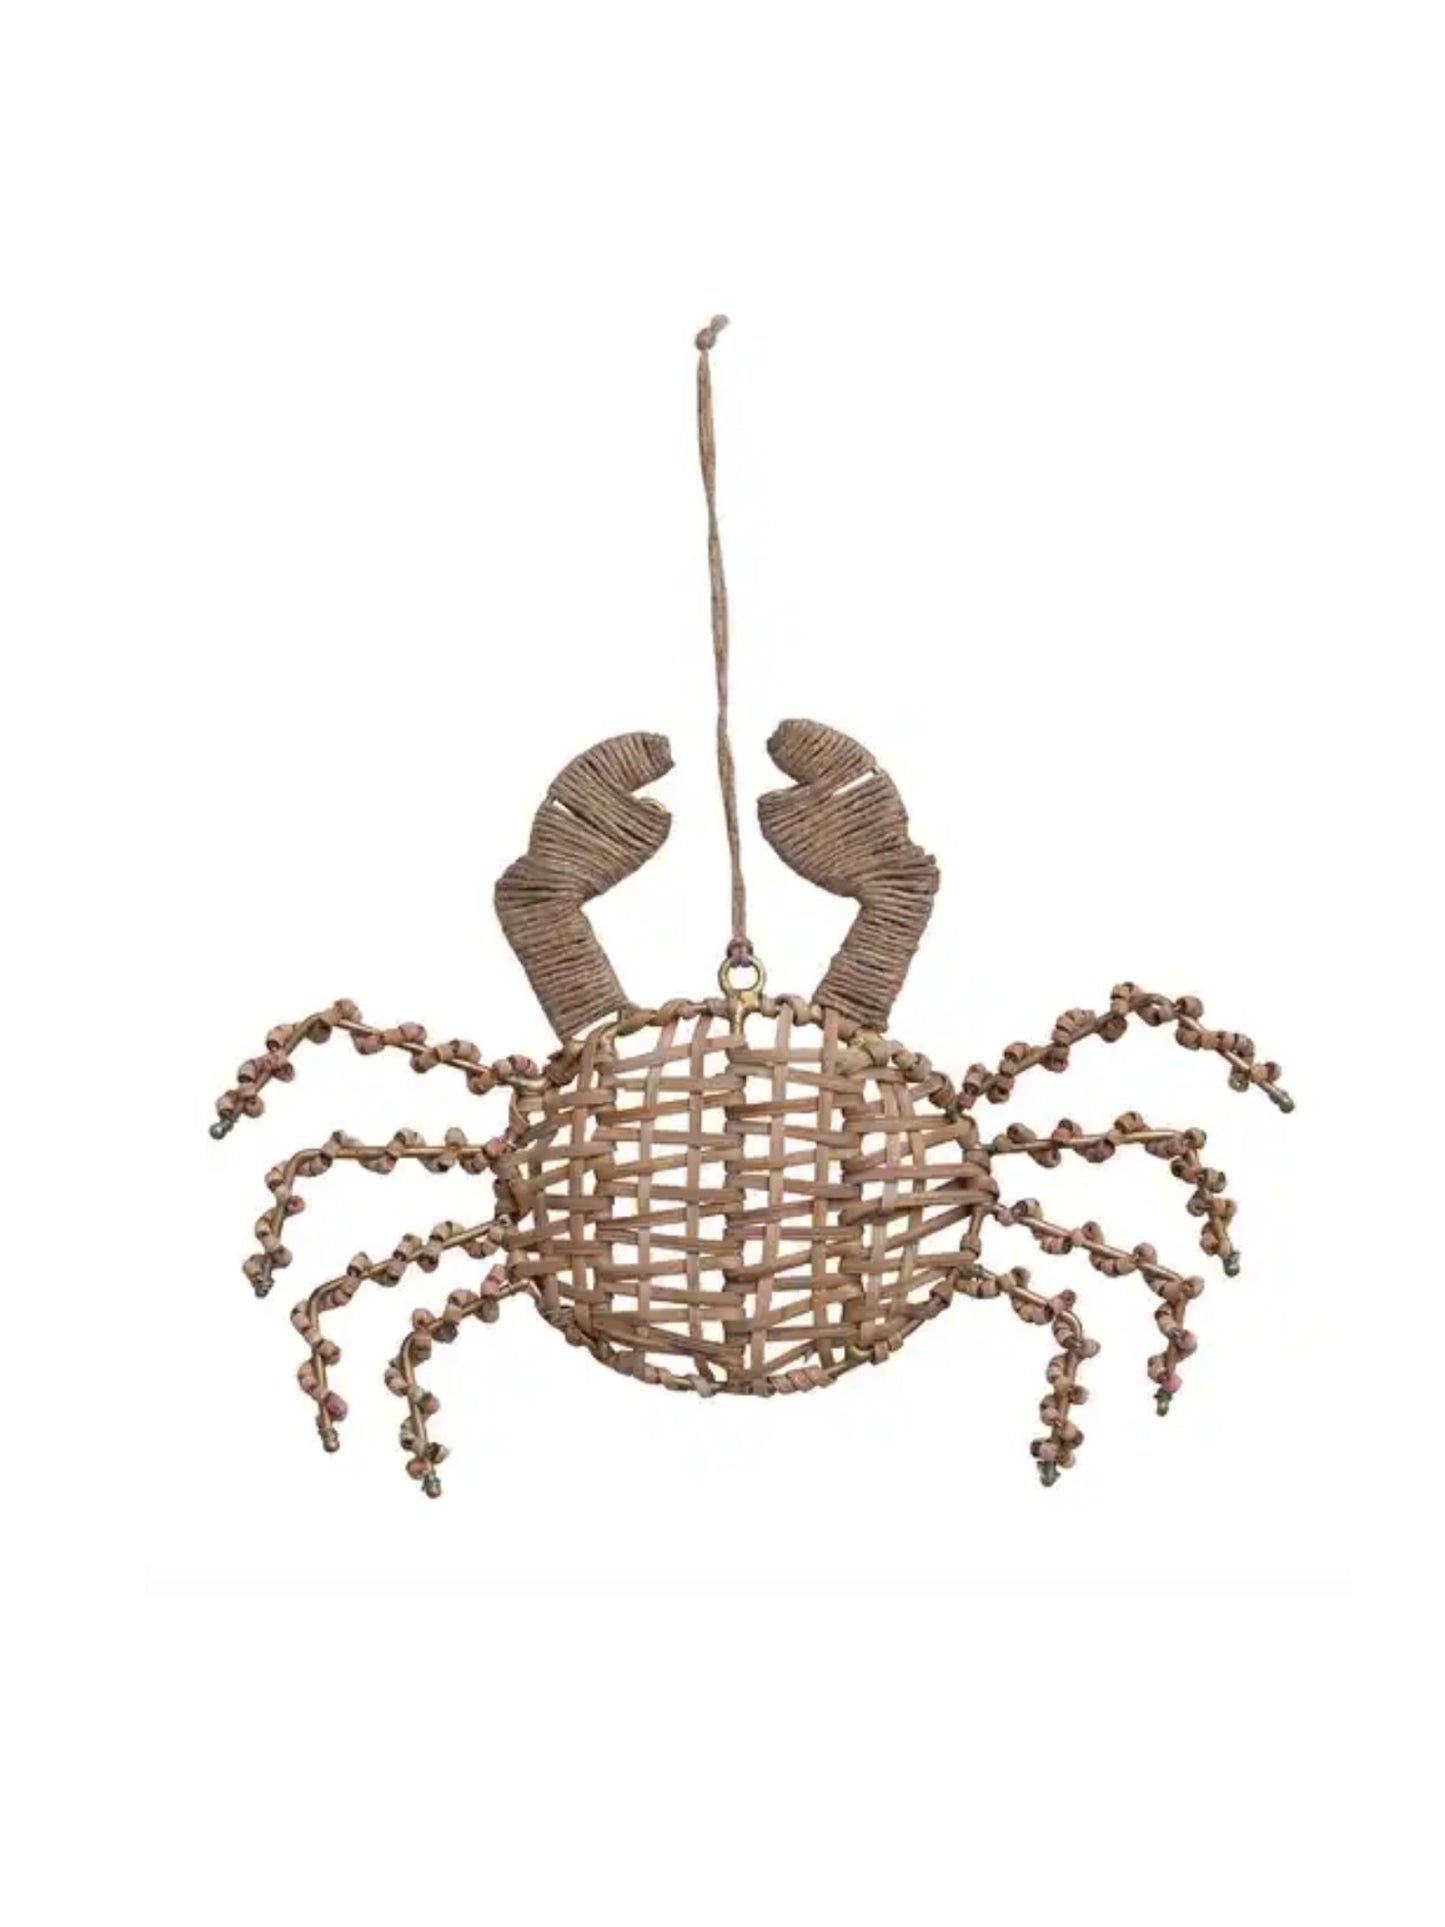 Rattan & Wood Bead Crab Ornament